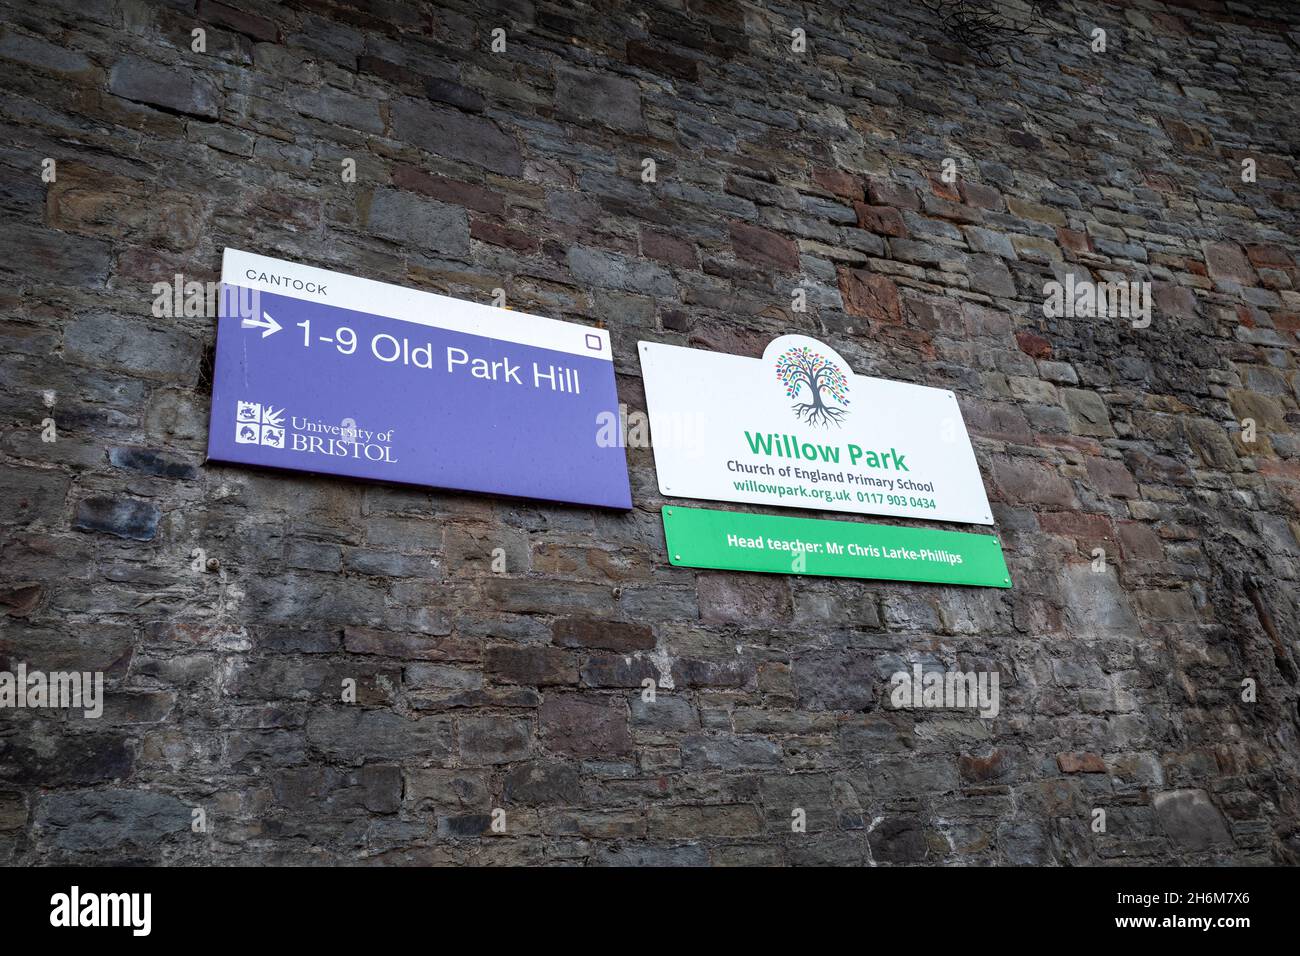 Signalisation à l'entrée de l'école primaire Willow Park CofE, Bristol, Royaume-Uni (Nov21) Banque D'Images